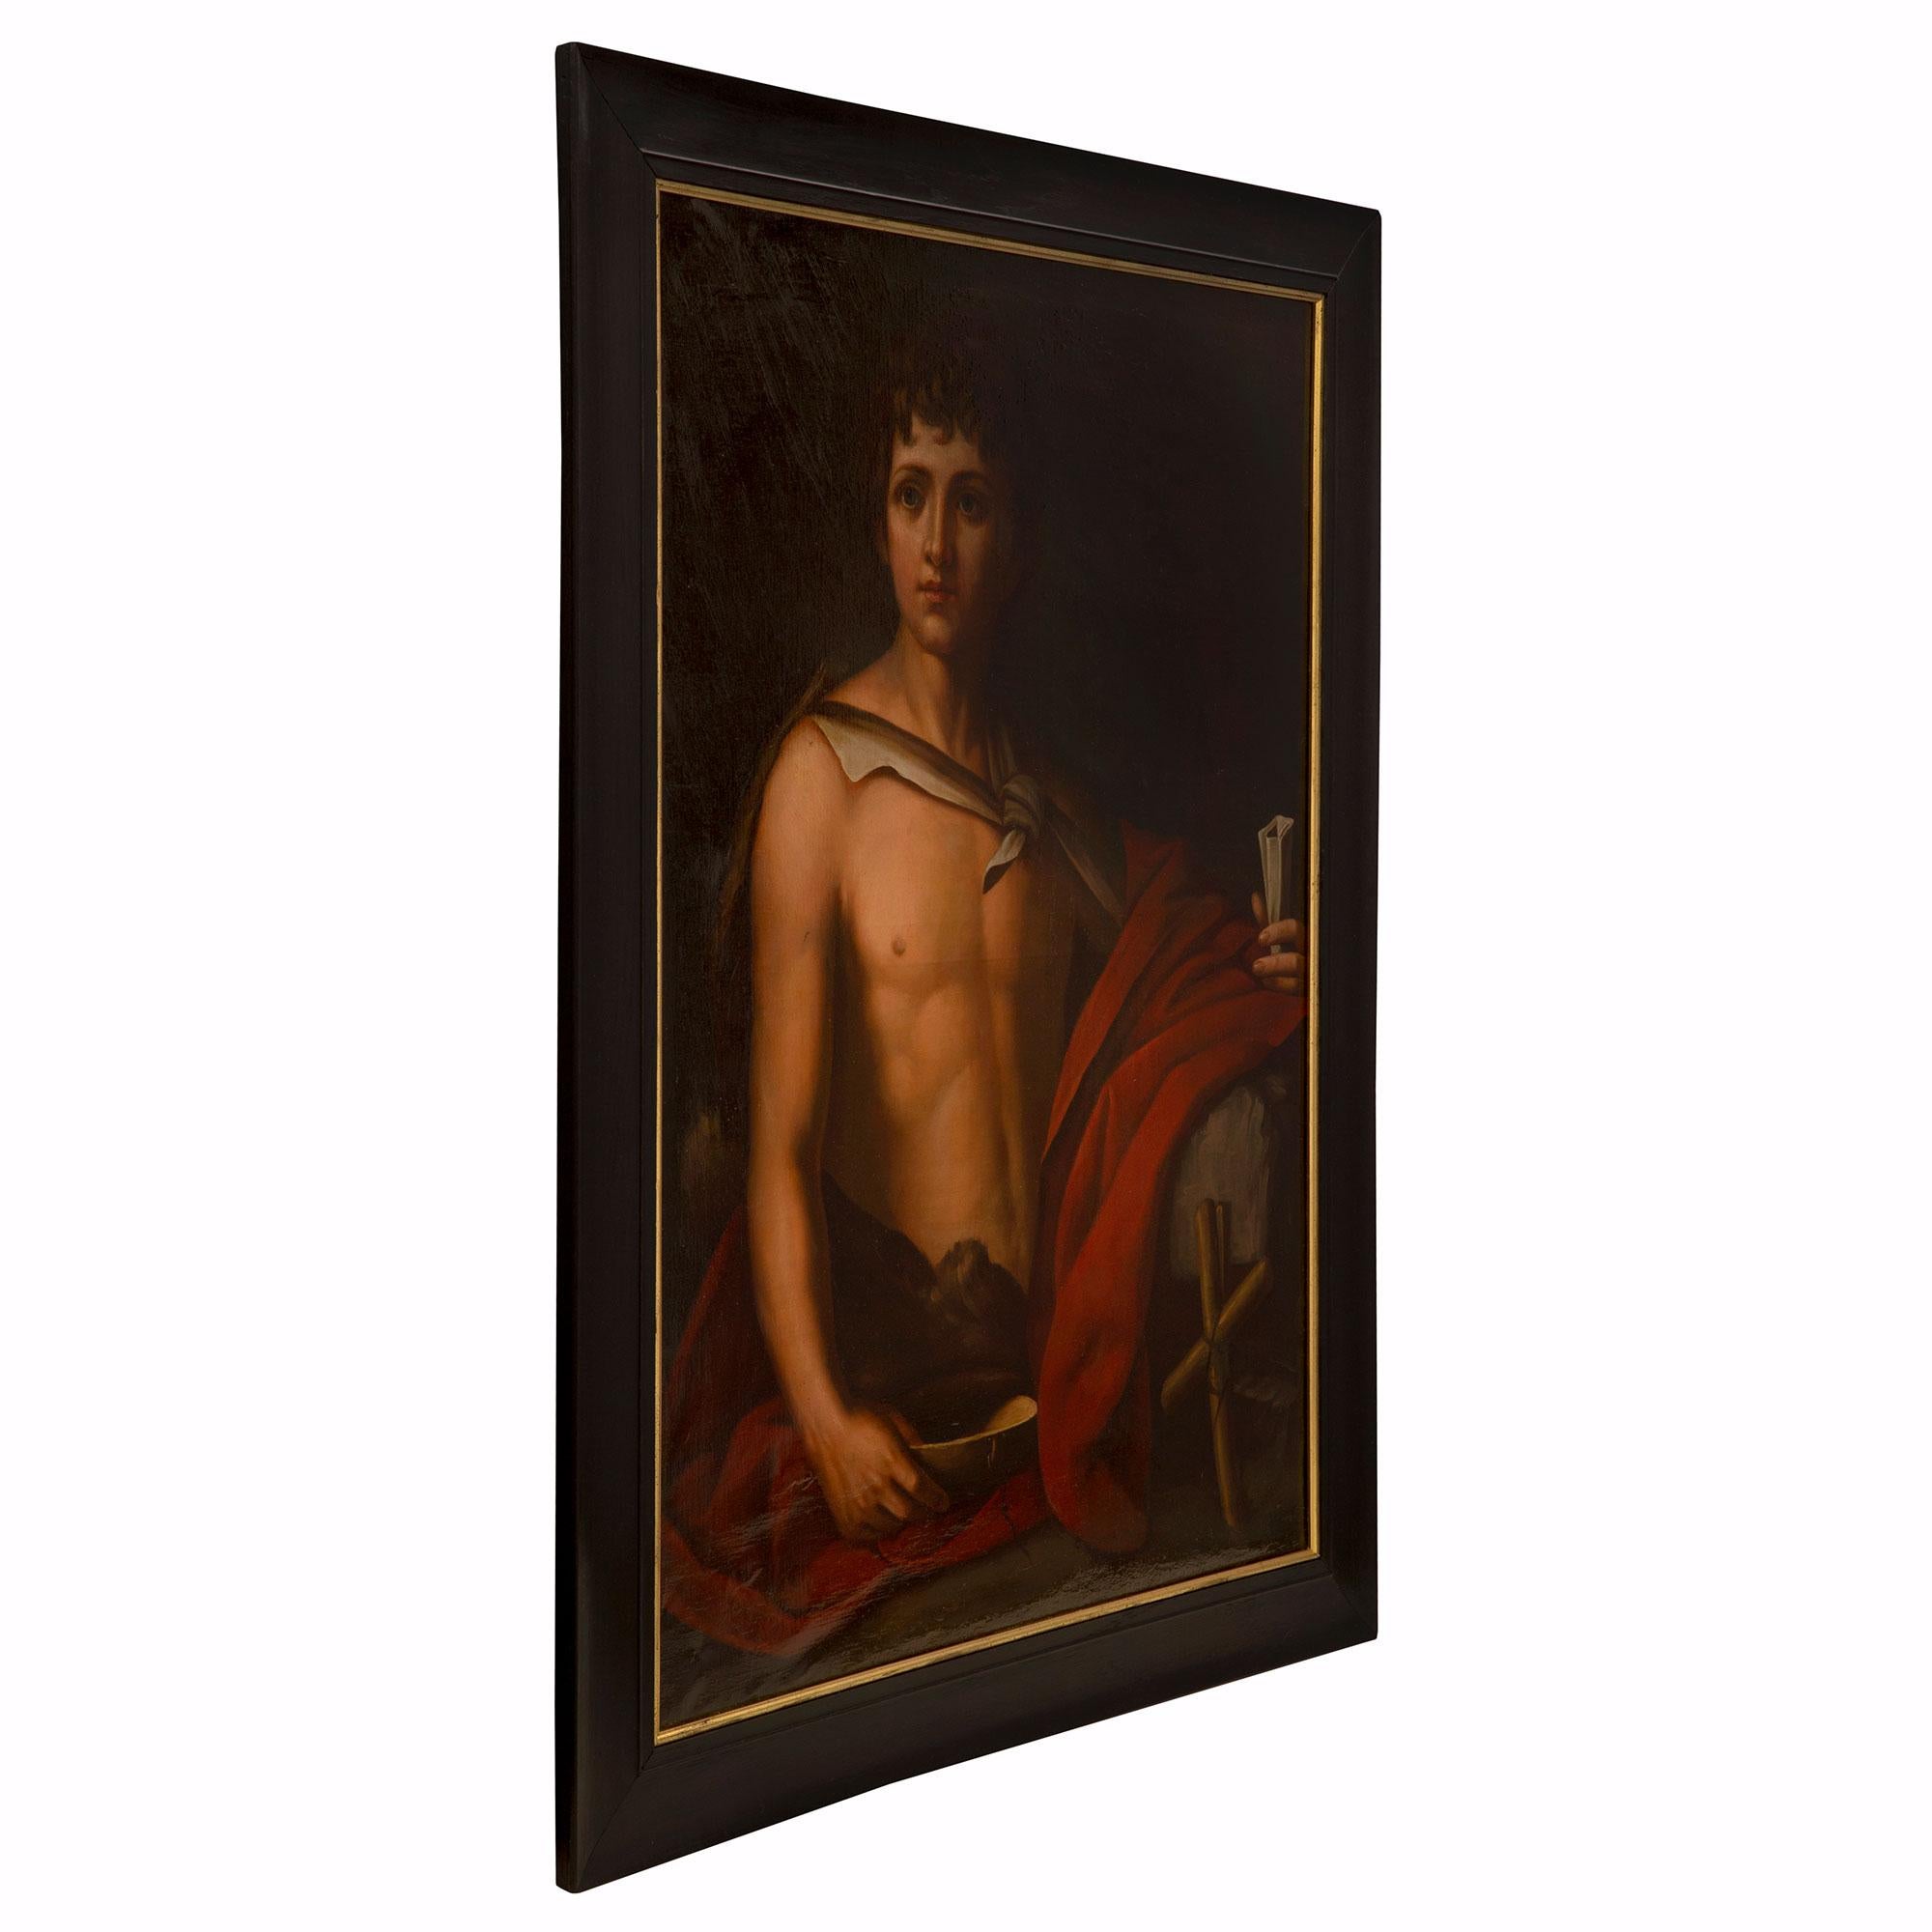 Eine feine italienische 19. Jahrhundert neo-klassischen st. Öl auf Leinwand Gemälde eines jungen Mannes. Der junge Mann hat seinen roten Mantel über den linken Arm gehängt und hält eine Schriftrolle in der linken Hand. Er hält eine Schale mit einem